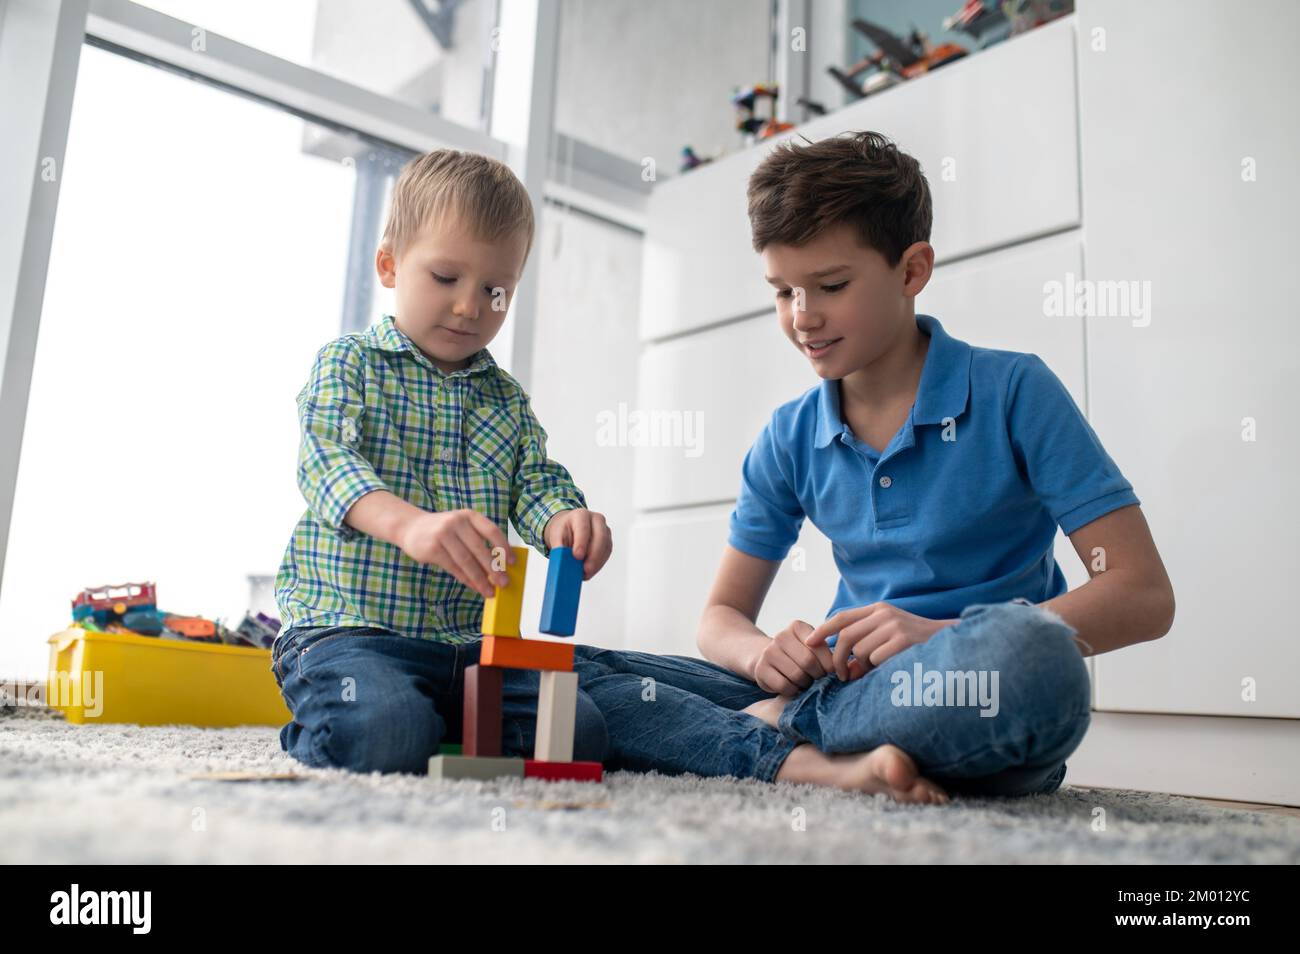 Ruhiges, konzentriertes Kind, das kleine Bausteine aus Plastik in Gegenwart seines älteren Bruders zusammenfügt. Stockfoto